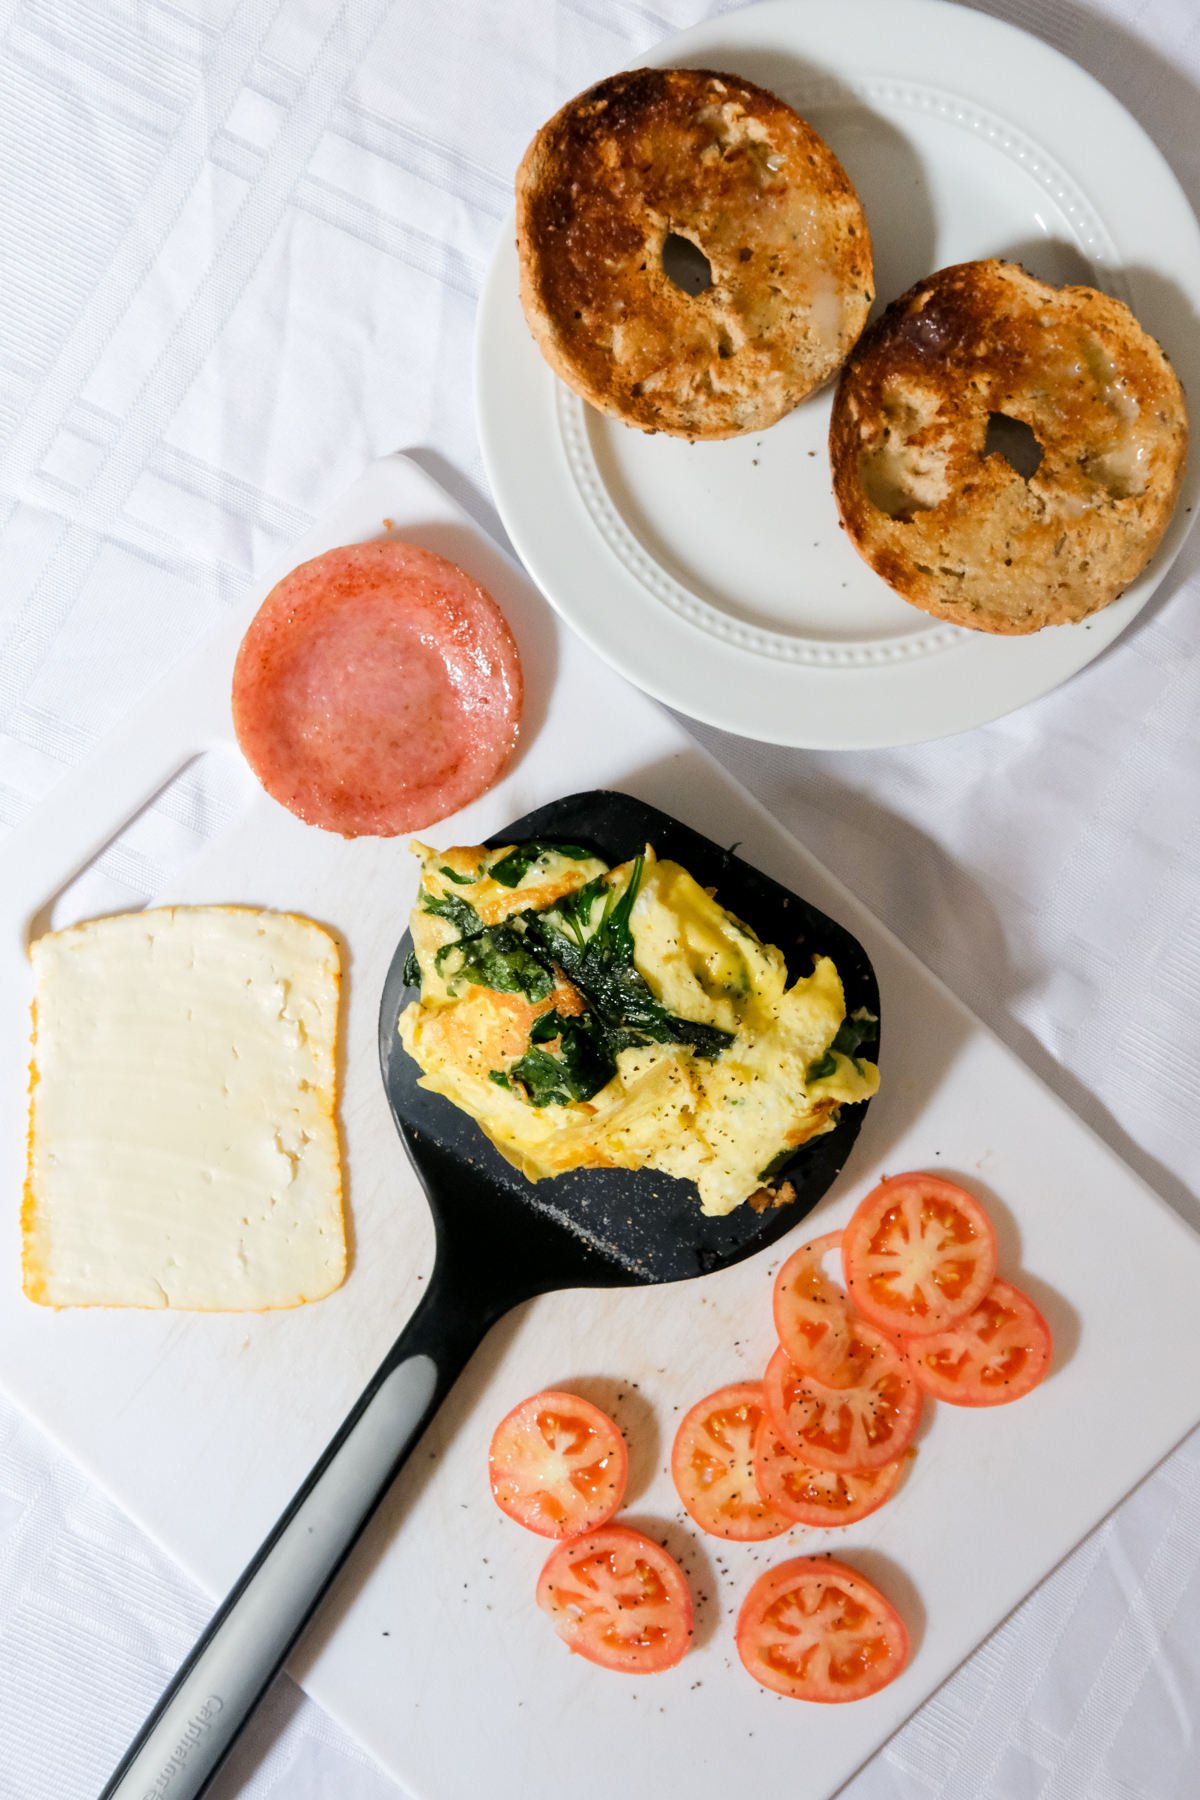 https://www.kierstenhickman.com/wp-content/uploads/2020/09/spinach-omelette-breakfast-sandwich-2-kiersten-hickman.jpg